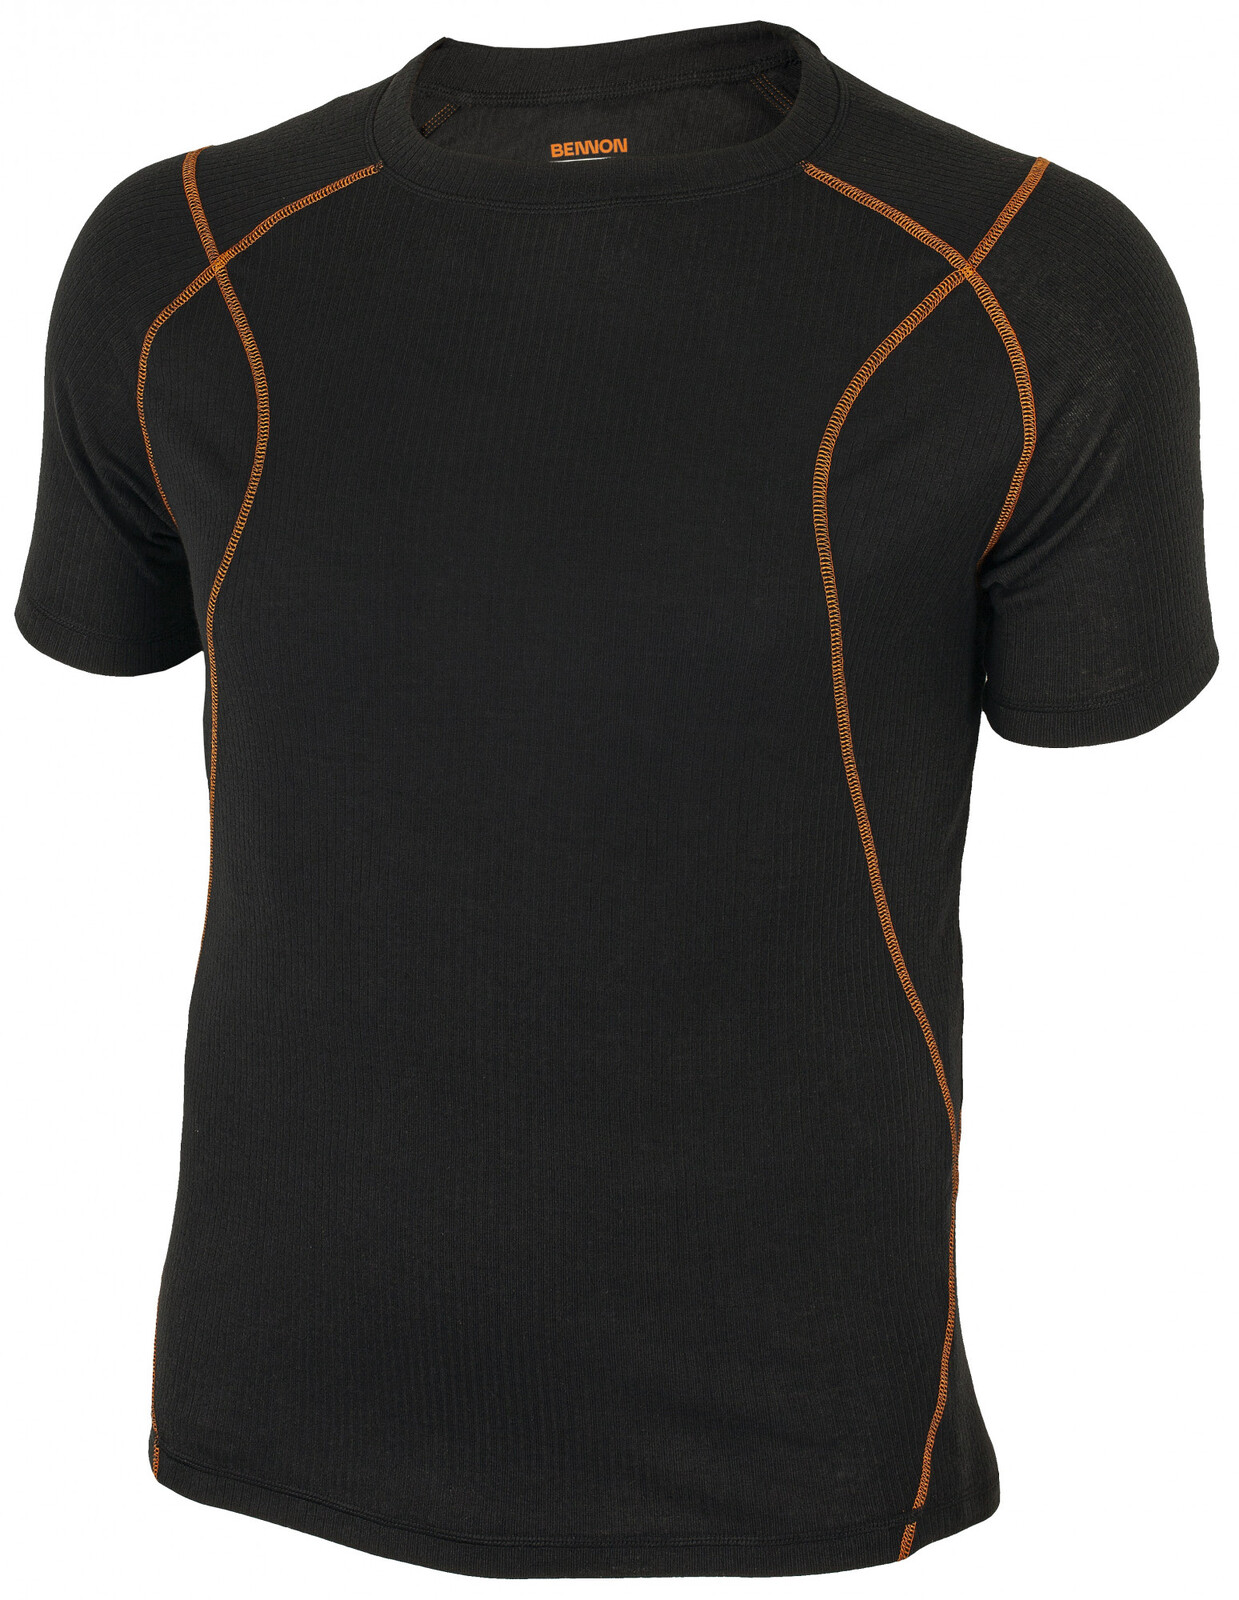 Pánske funkčné termo tričko s krátkym rukávom Bennon Artemios - veľkosť: XL, farba: čierna/oranžová